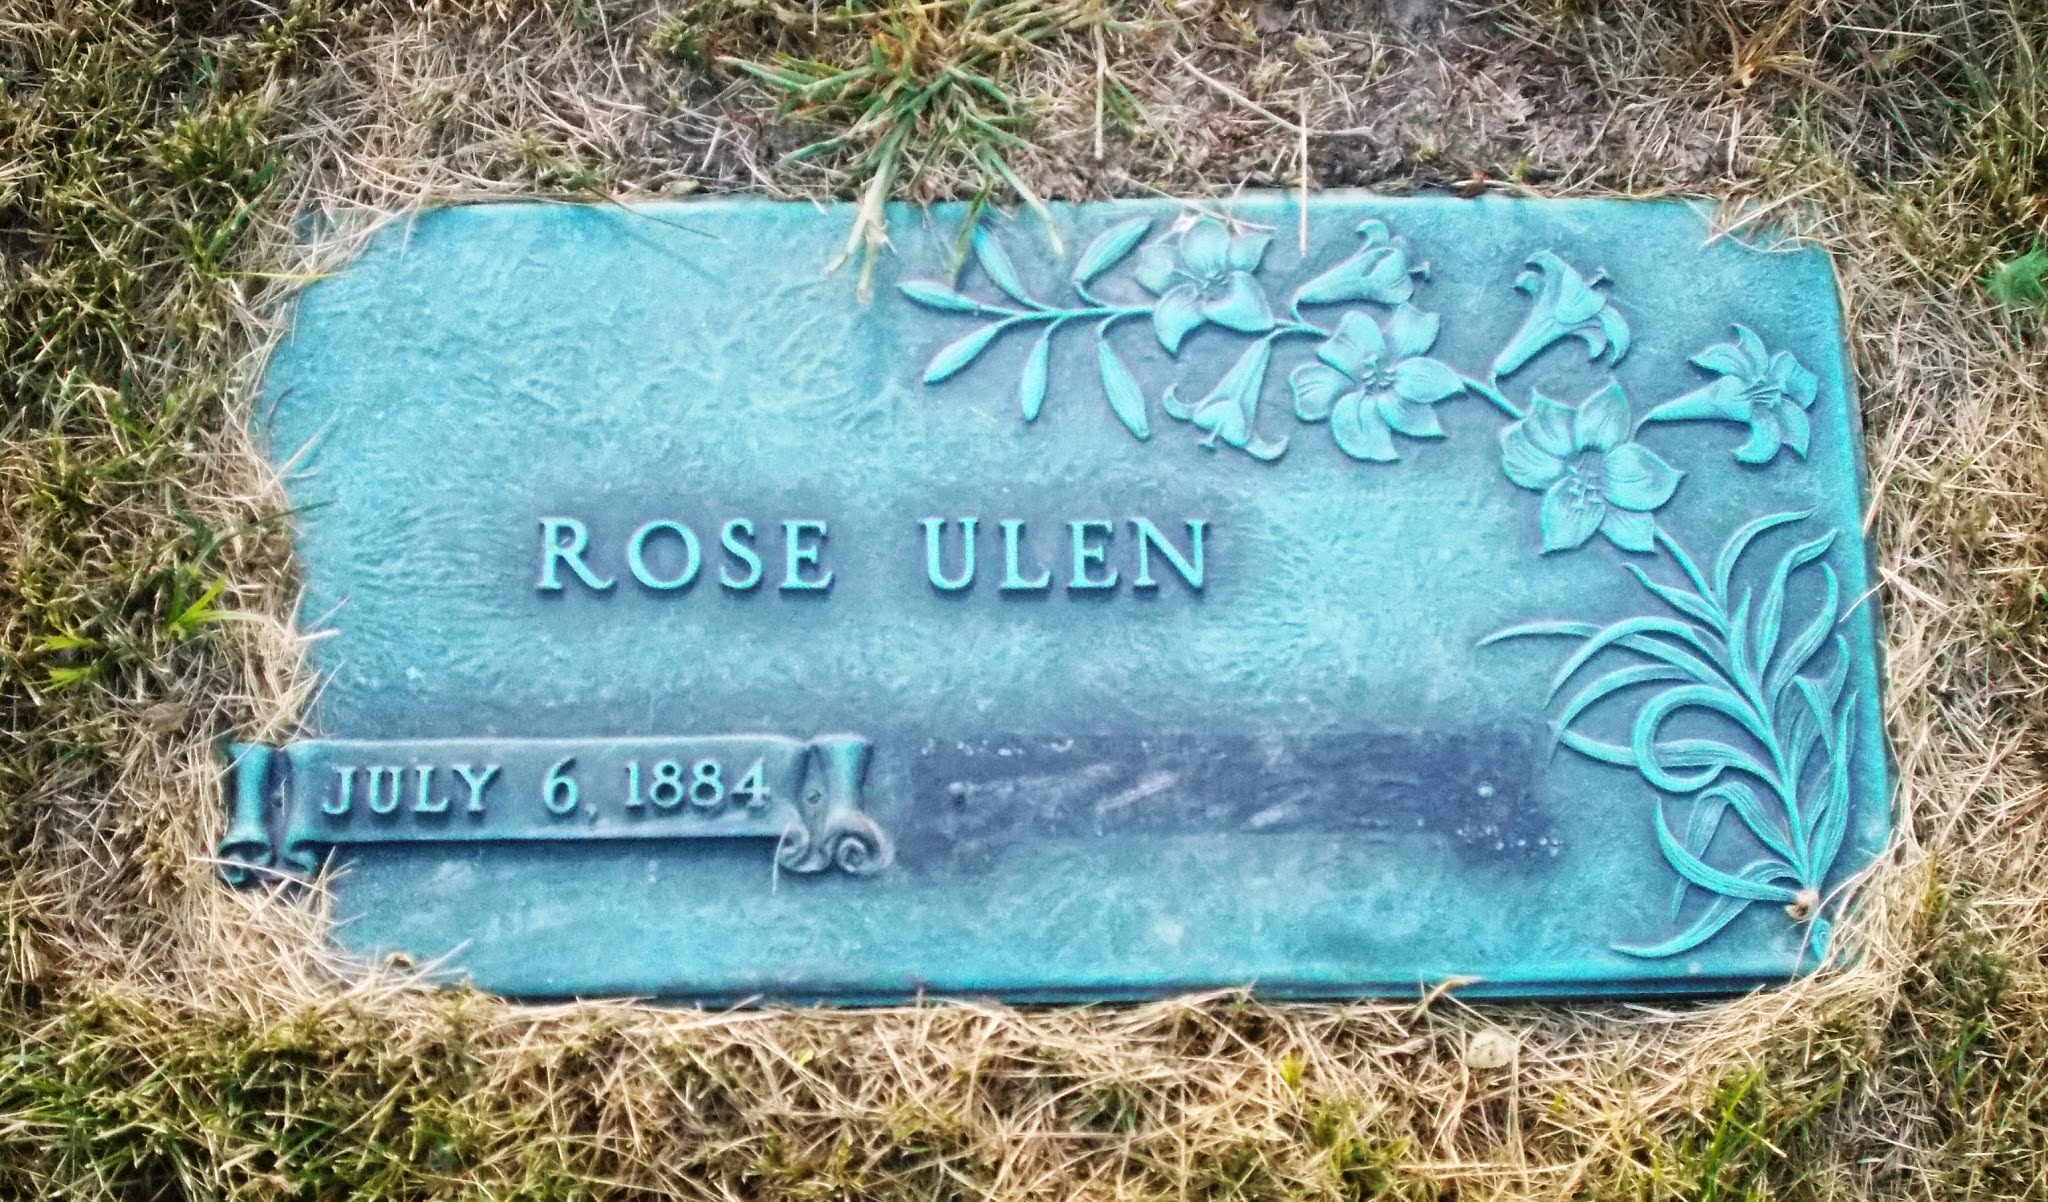 Rose Ulen